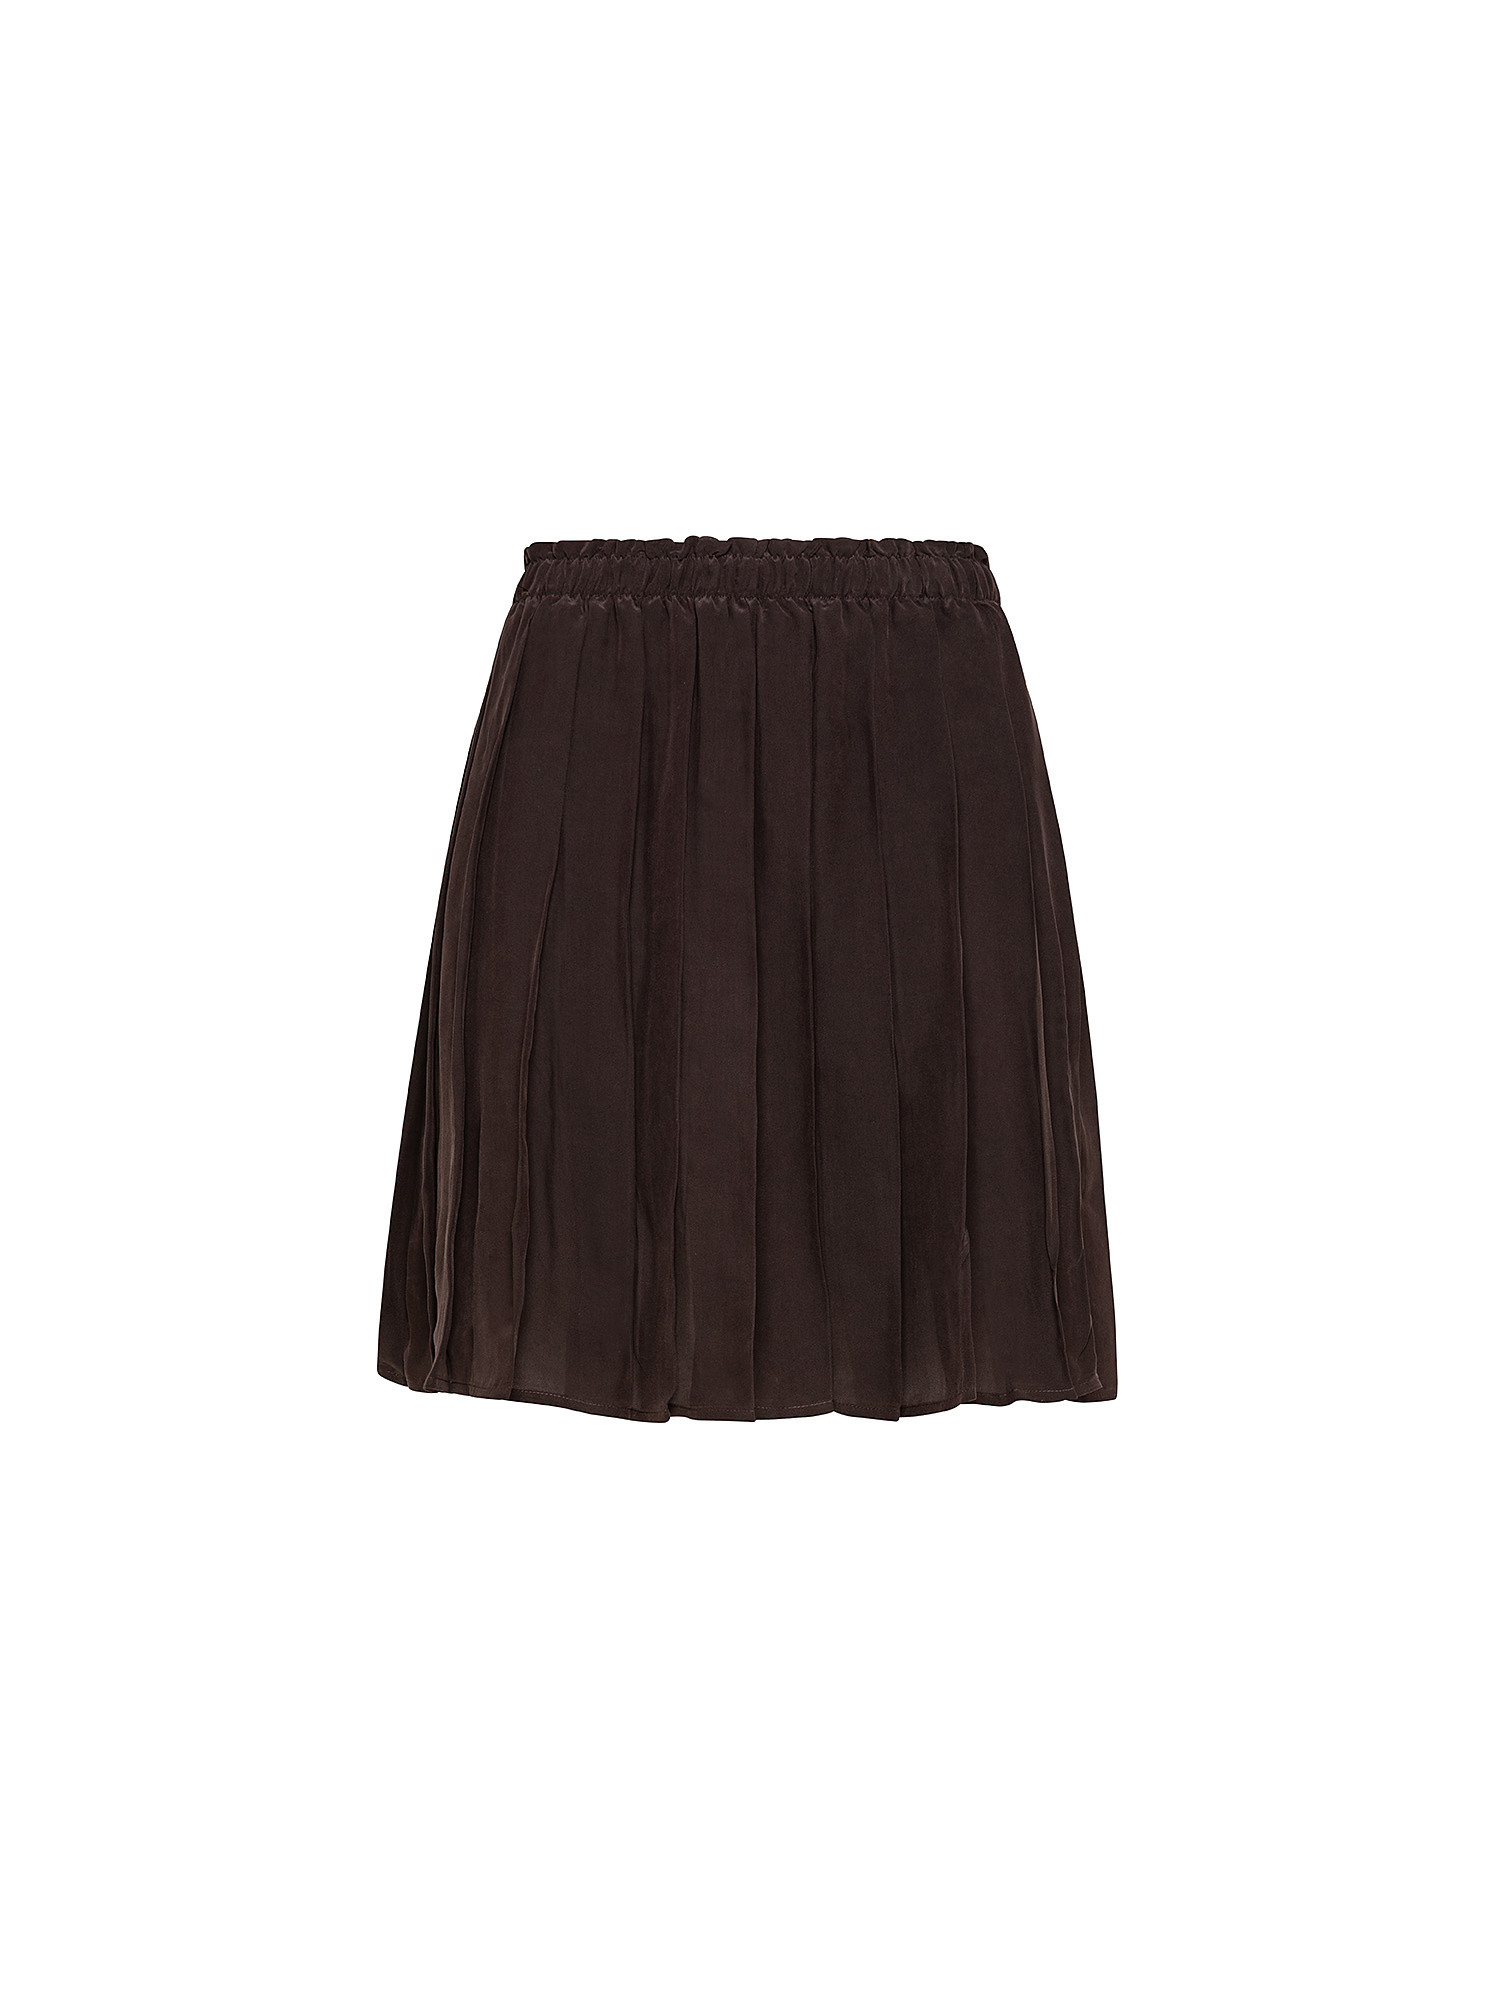 Плиссированная мини-юбка из вискозы Attic And Barn, коричневый ассиметричная плиссированная мини юбка с оборками модная трапециевидная юбка с завышенной талией праздничная стильная юбка для женщин н